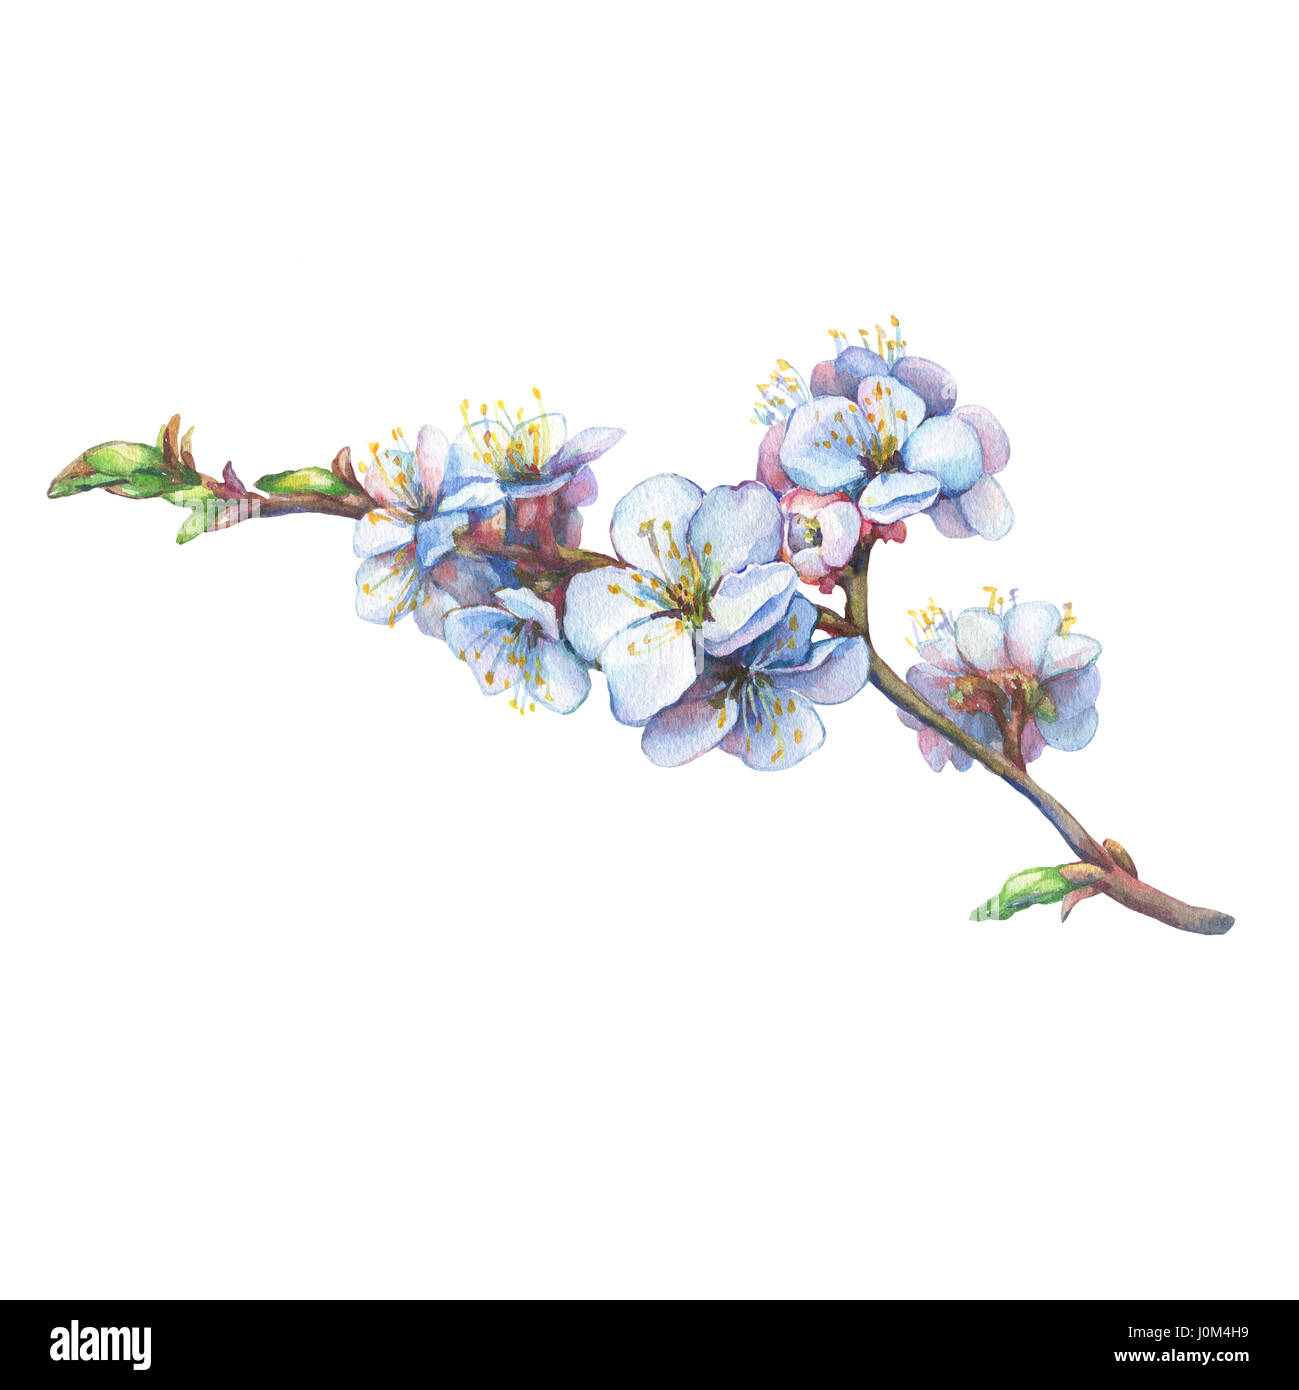 Illustration de branche d'abricot avec fleurs. Aquarelle dessinée à la main sur fond blanc. Banque D'Images